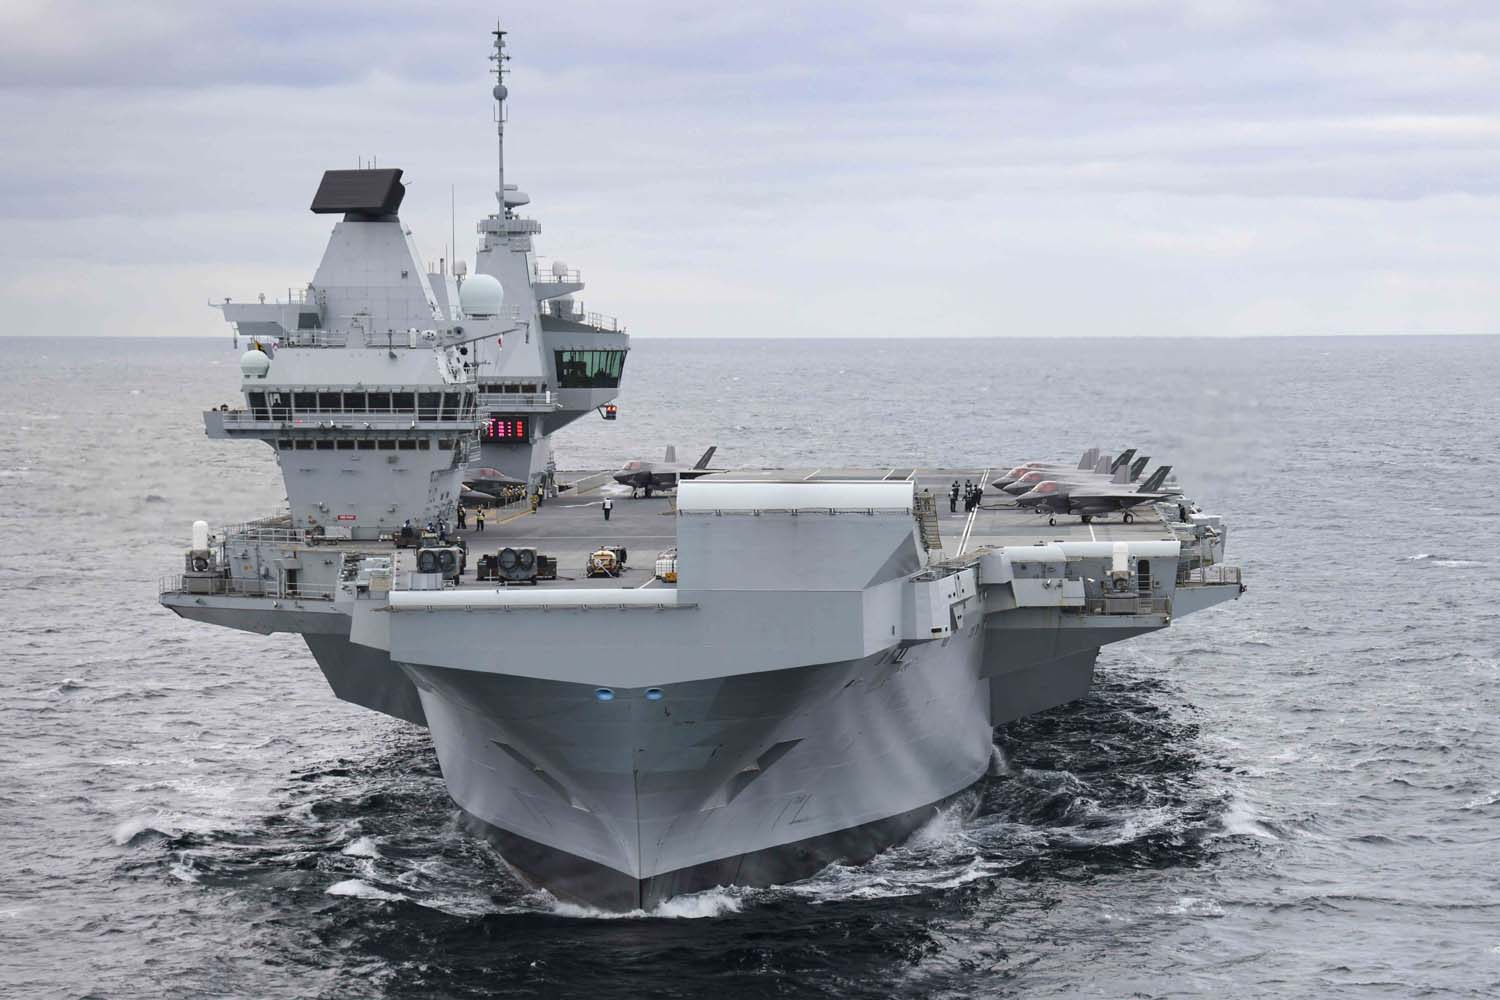 El portaaviones británico HMS Queen Elizabeth, que transporta cazas de quinta generación F-35B Lightning II, se ha transferido al mando de la OTAN por primera vez en la historia-2